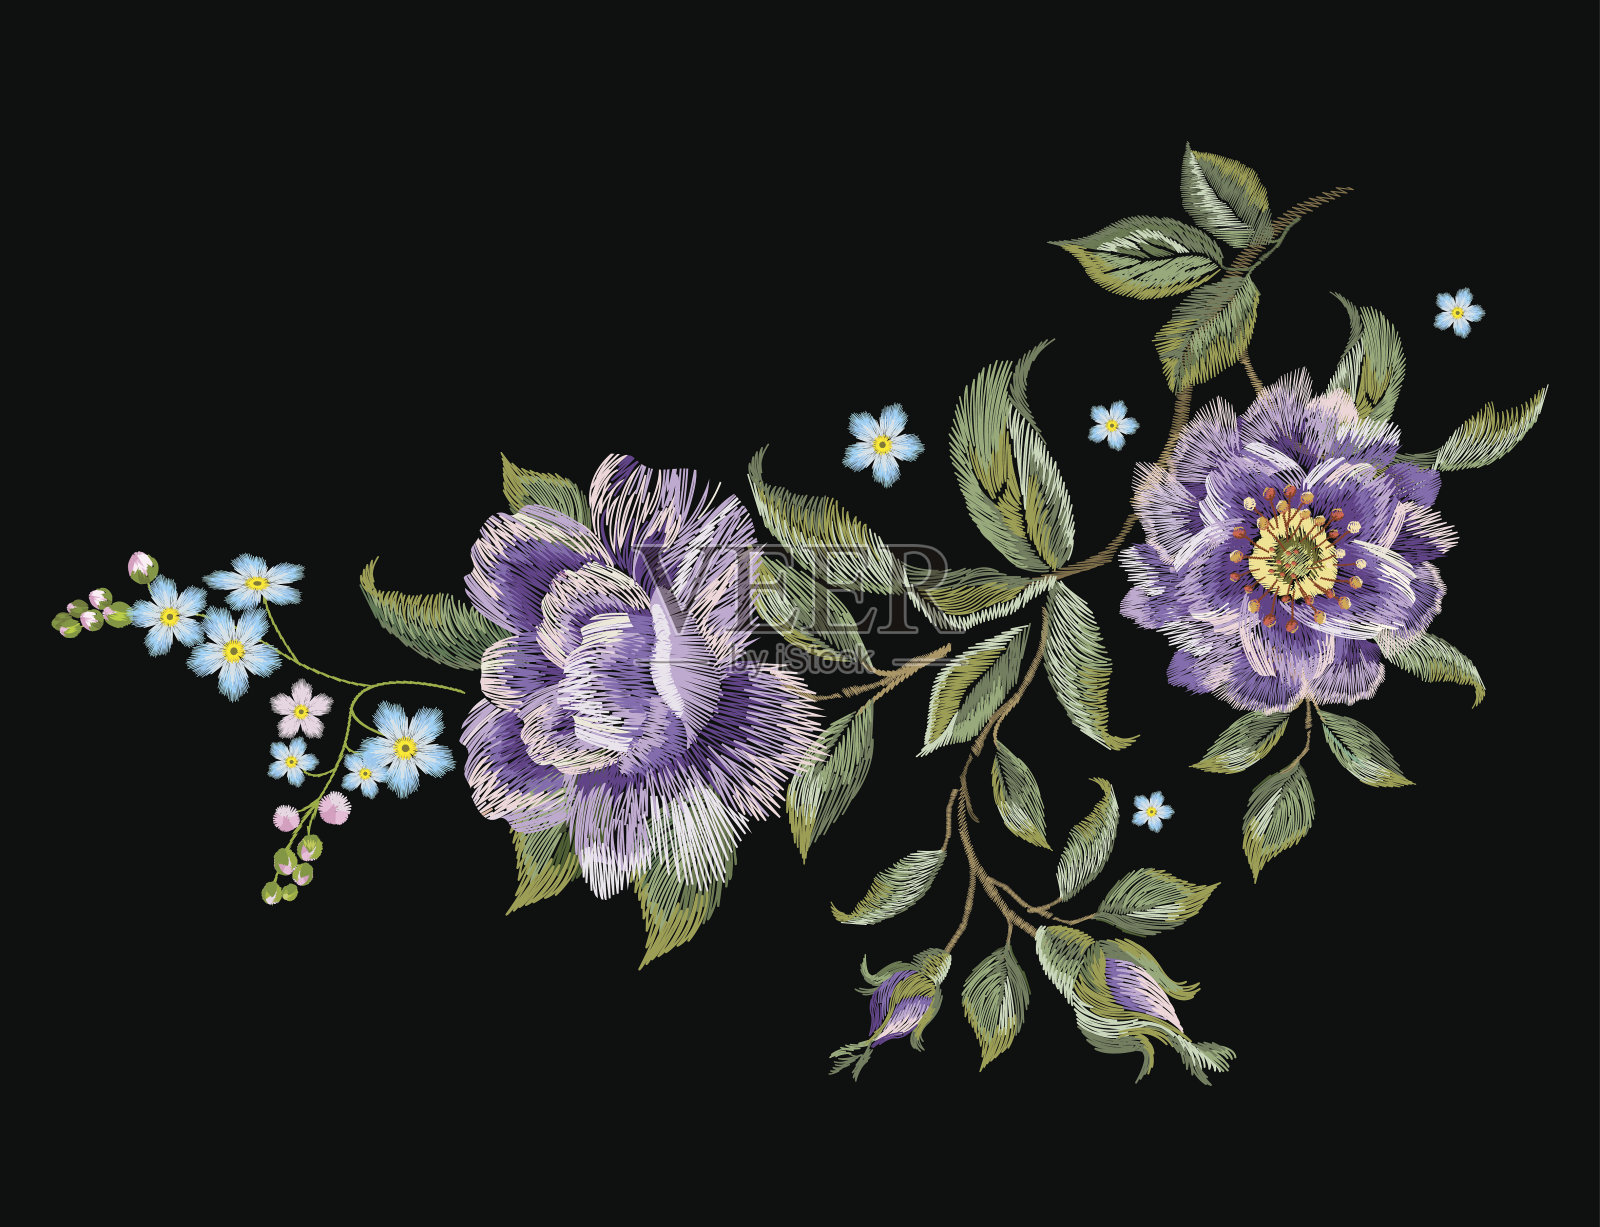 刺绣鲜艳的趋势花卉图案与紫色玫瑰。插画图片素材